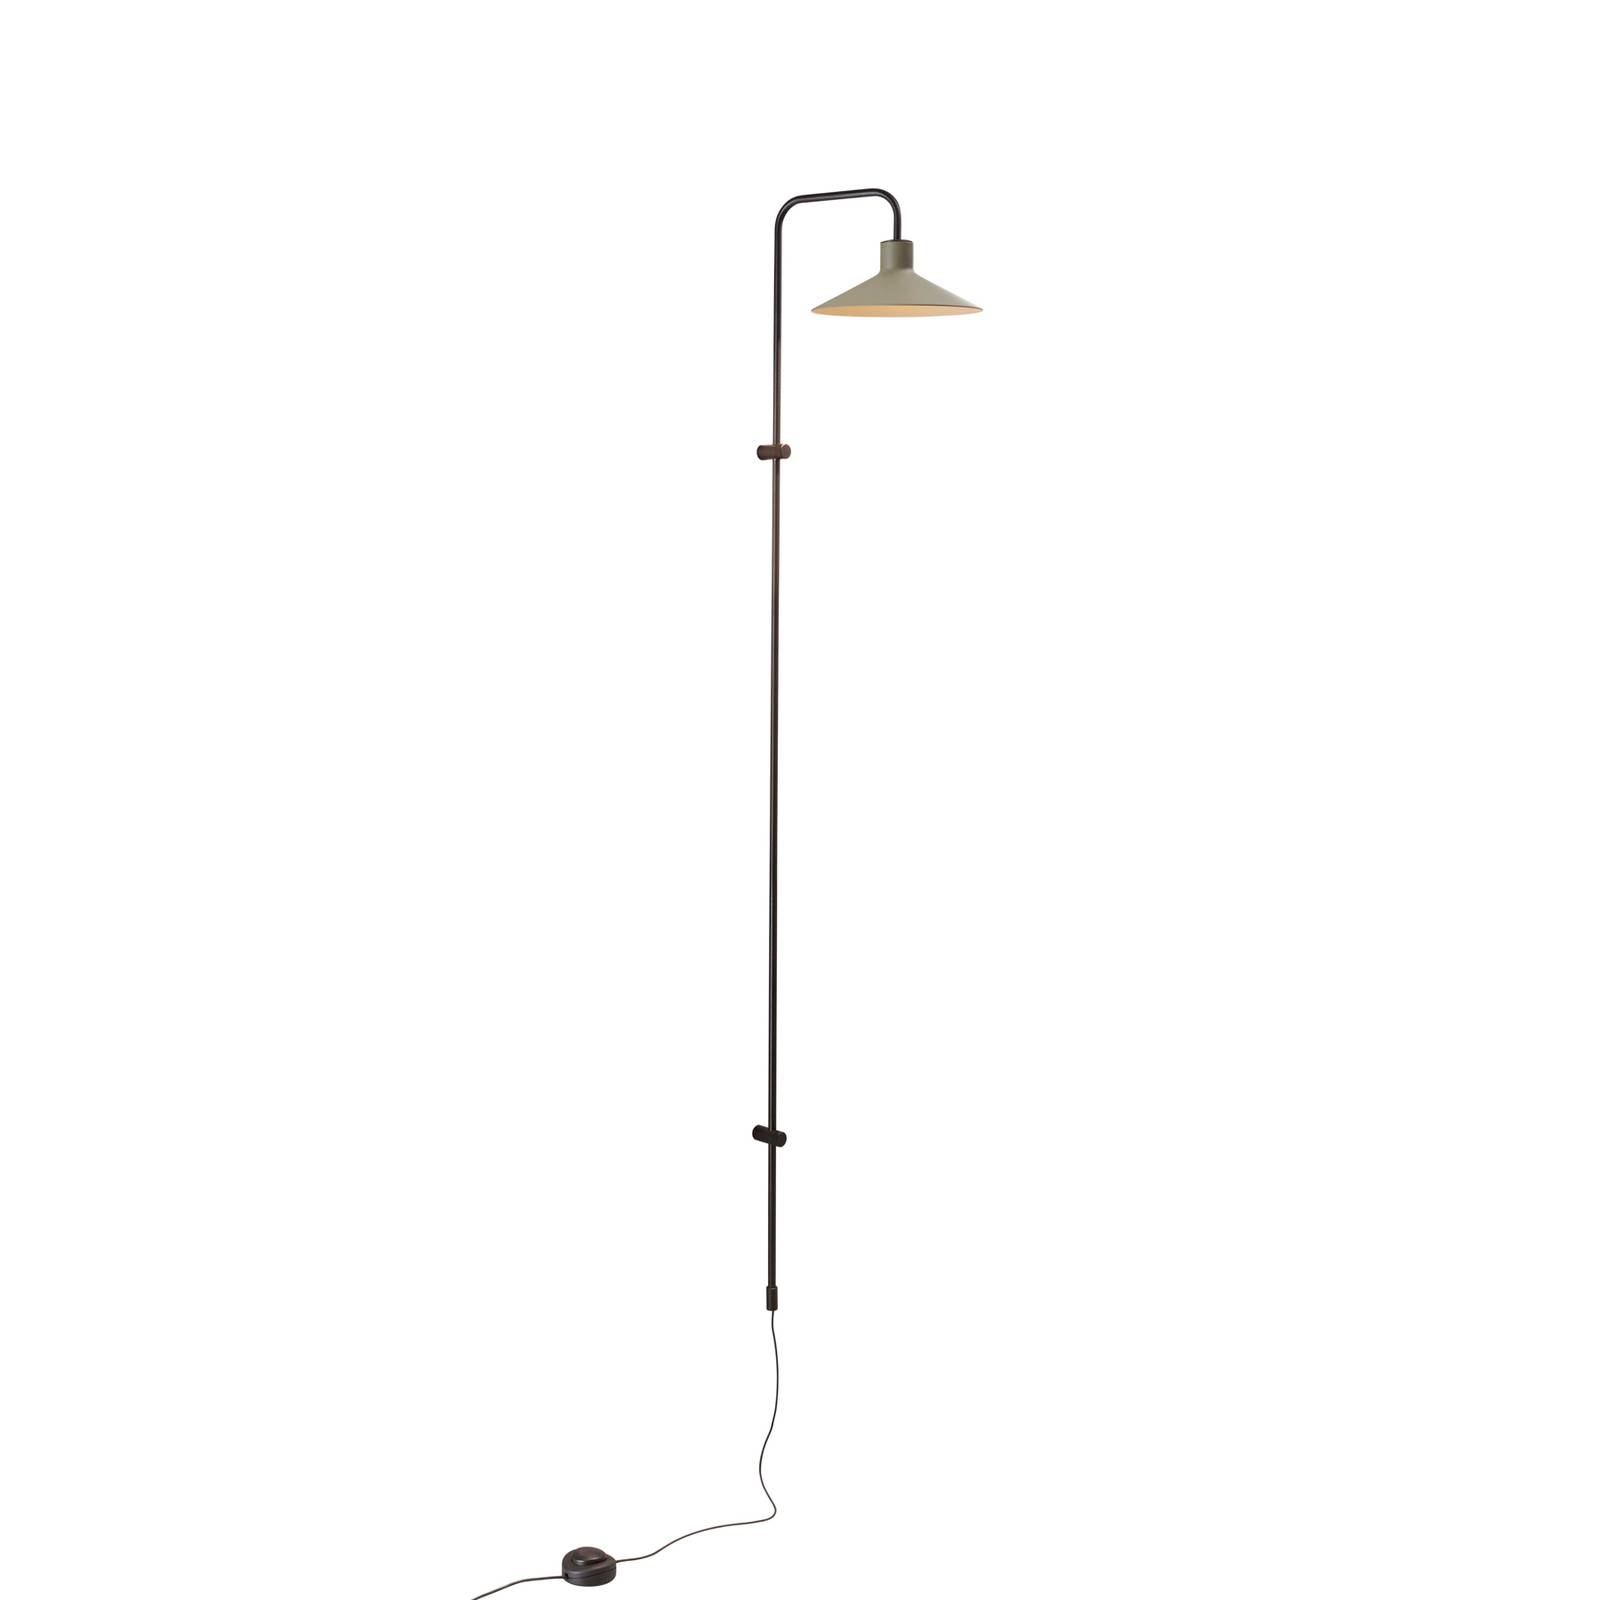 Bover Platet A05 LED-Wandlampe mit Dimmer, oliv von Bover